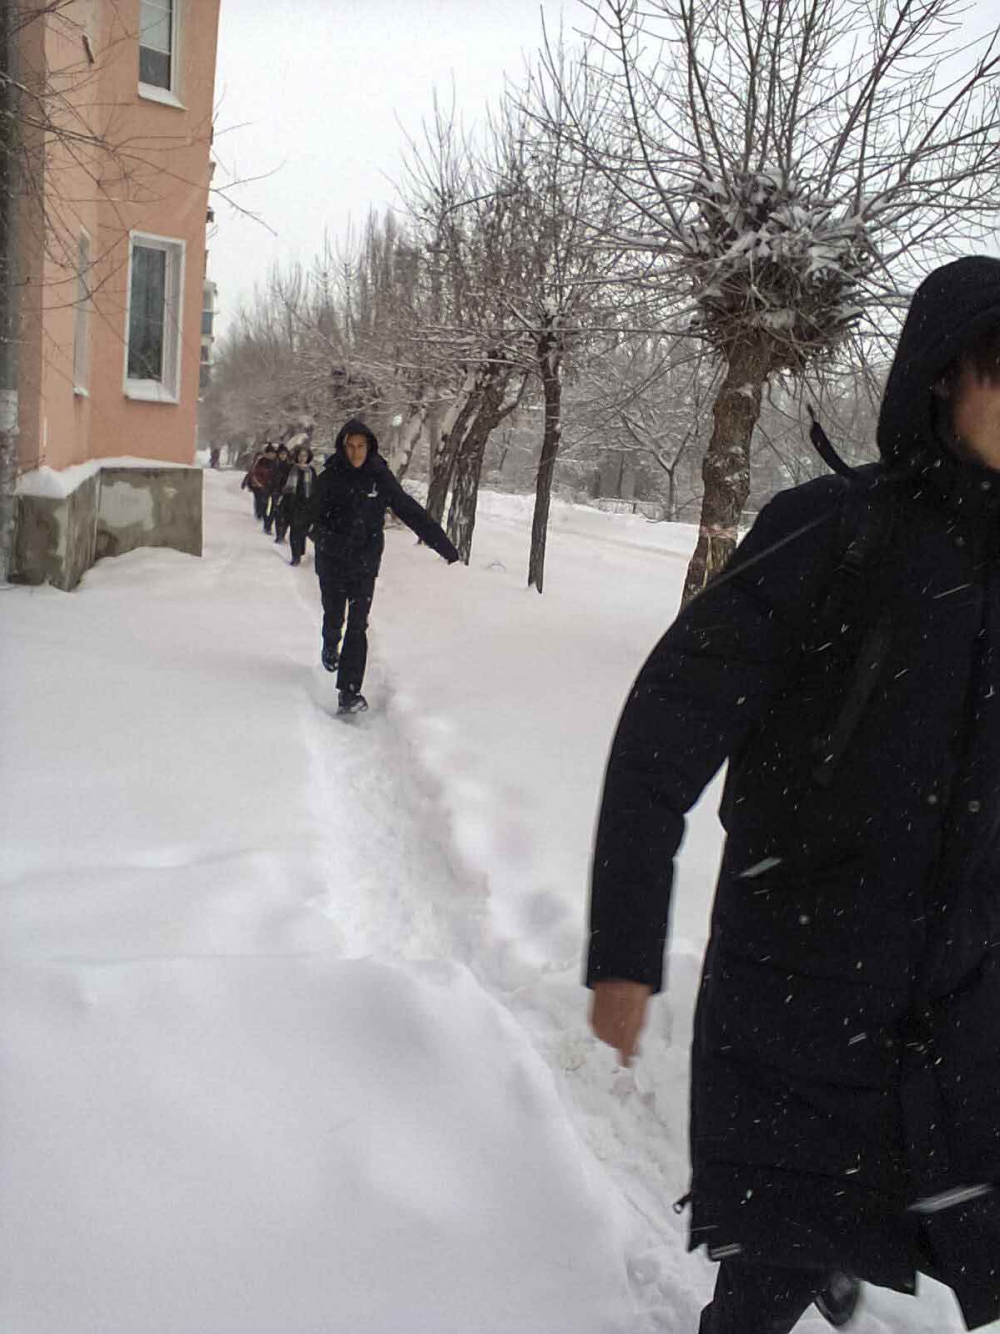 Пресс-служба Камышина известила, что первый замглавы Дмитрий Резвов «ногами» лично проинспектировал ход расчистки заснеженных улиц